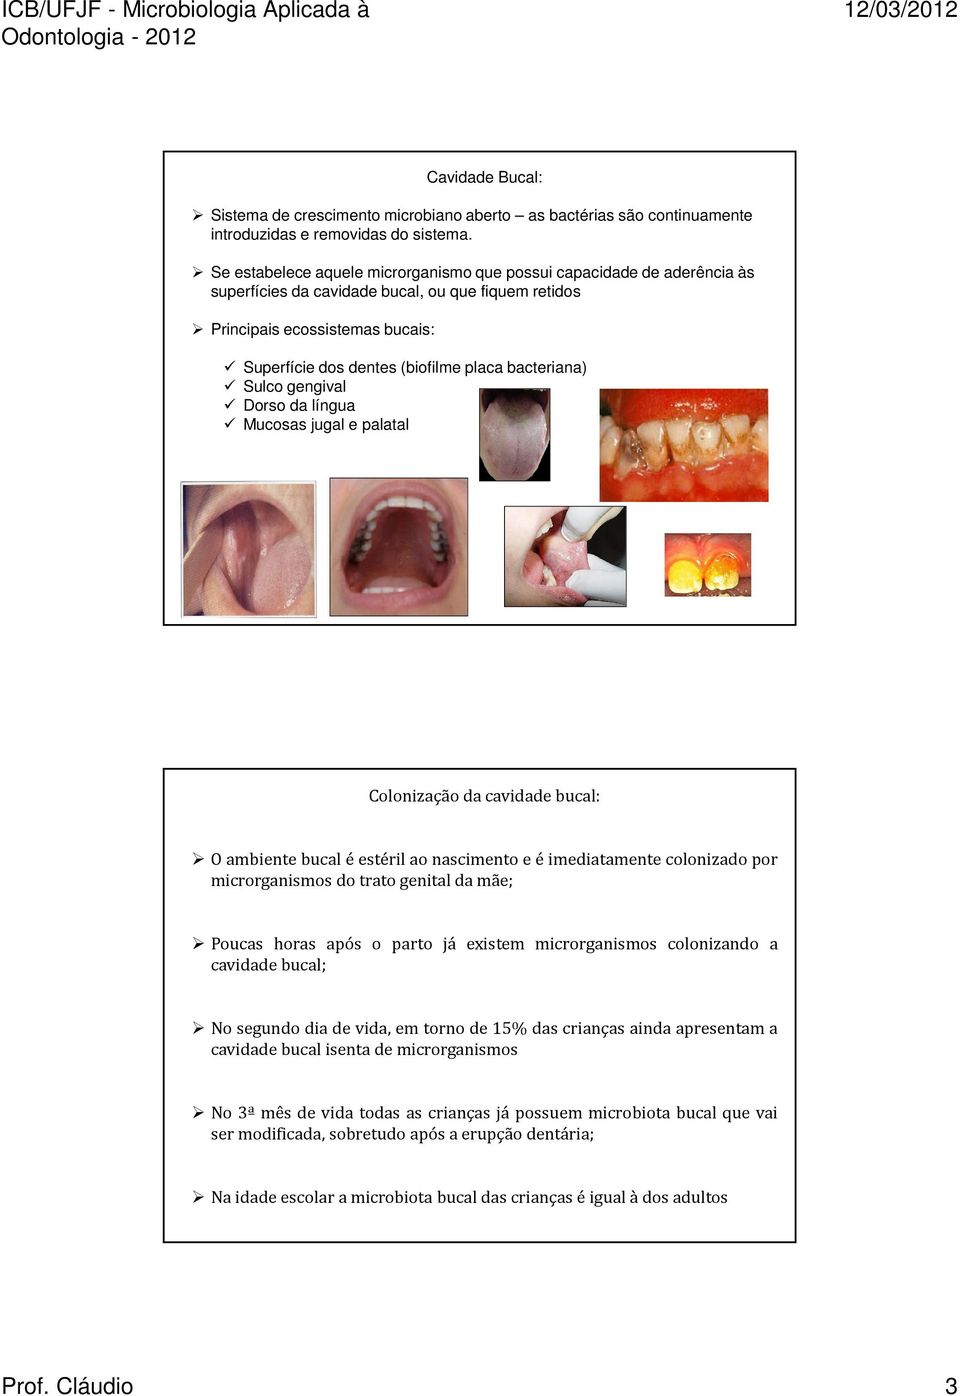 bacteriana) Sulco gengival Dorso da língua Mucosas jugal e palatal Colonização da cavidade bucal: O ambiente bucal é estéril ao nascimento e é imediatamente colonizado por microrganismos do trato